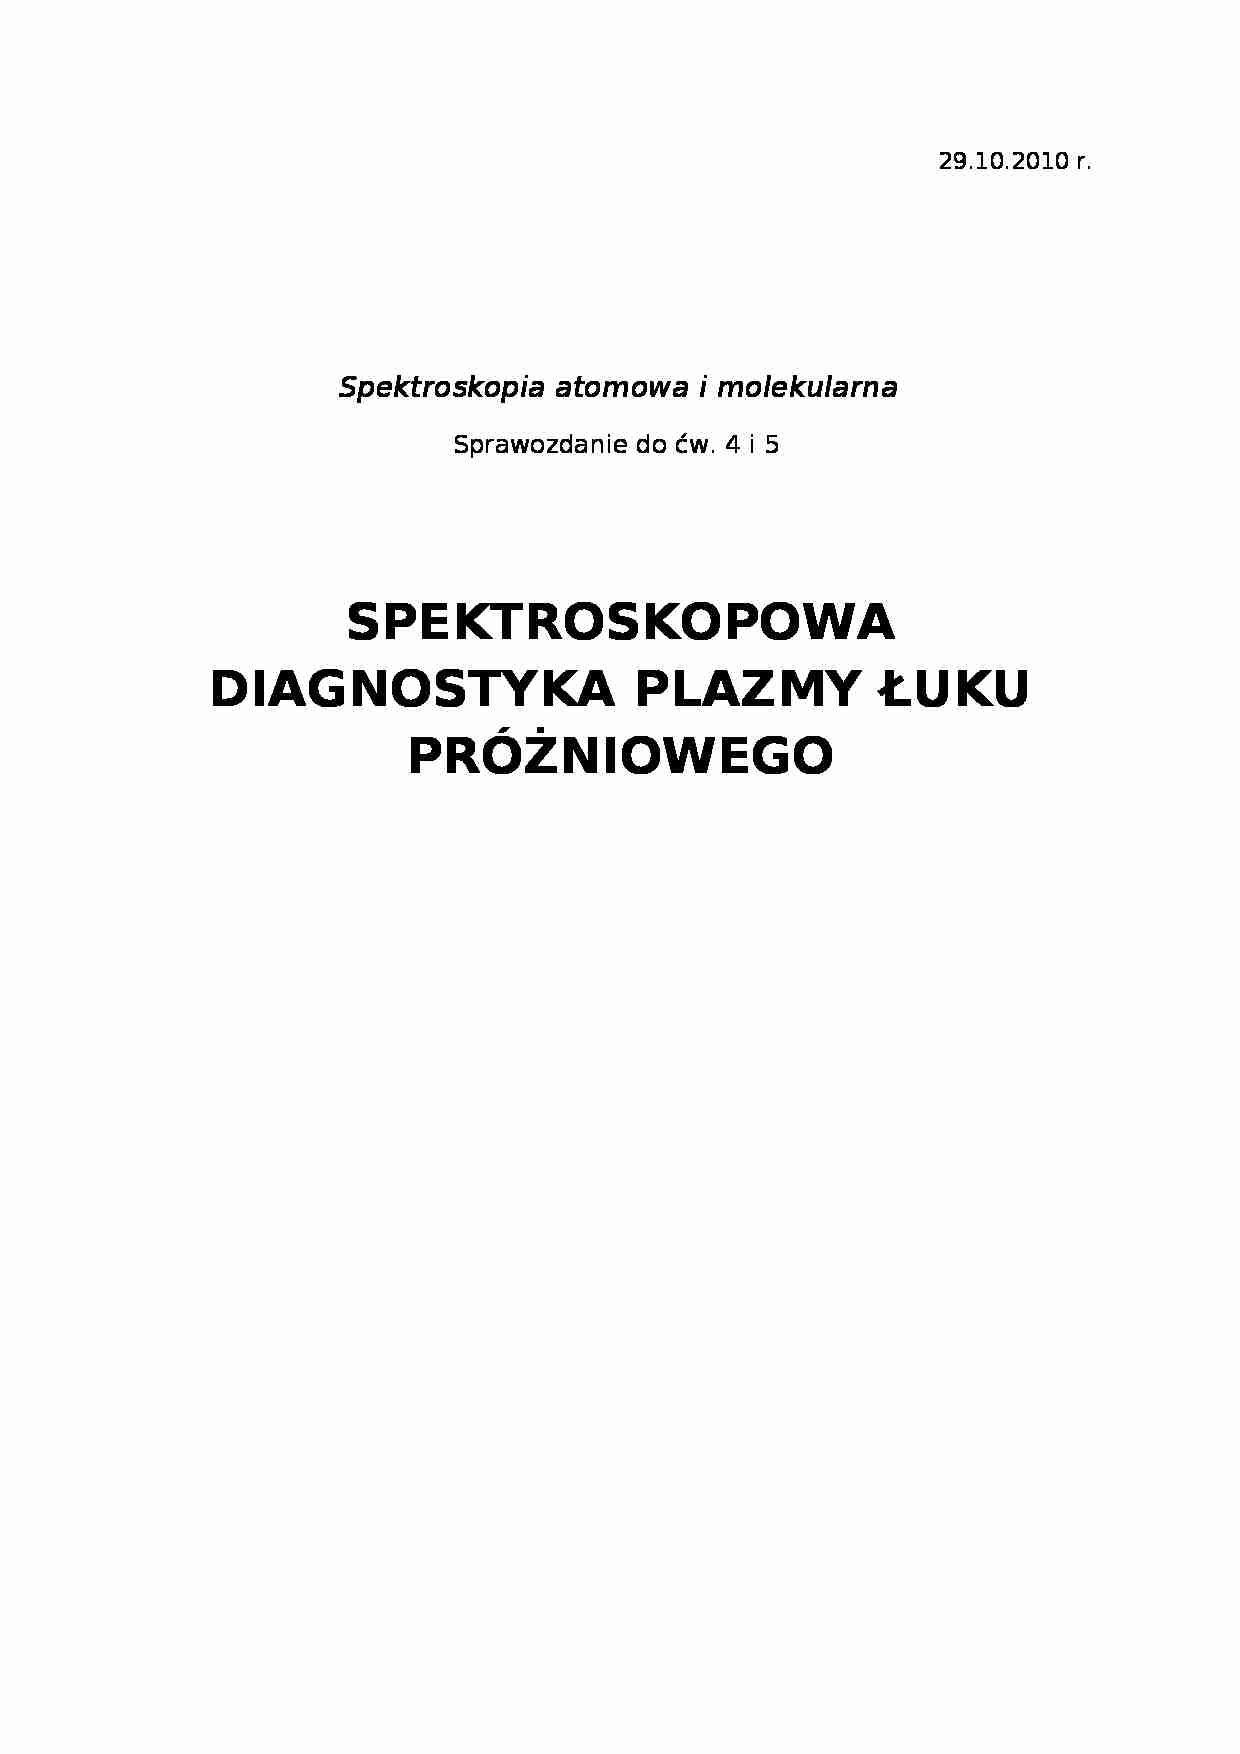 Diagnostyka plazm i łuku próżniowego  - strona 1